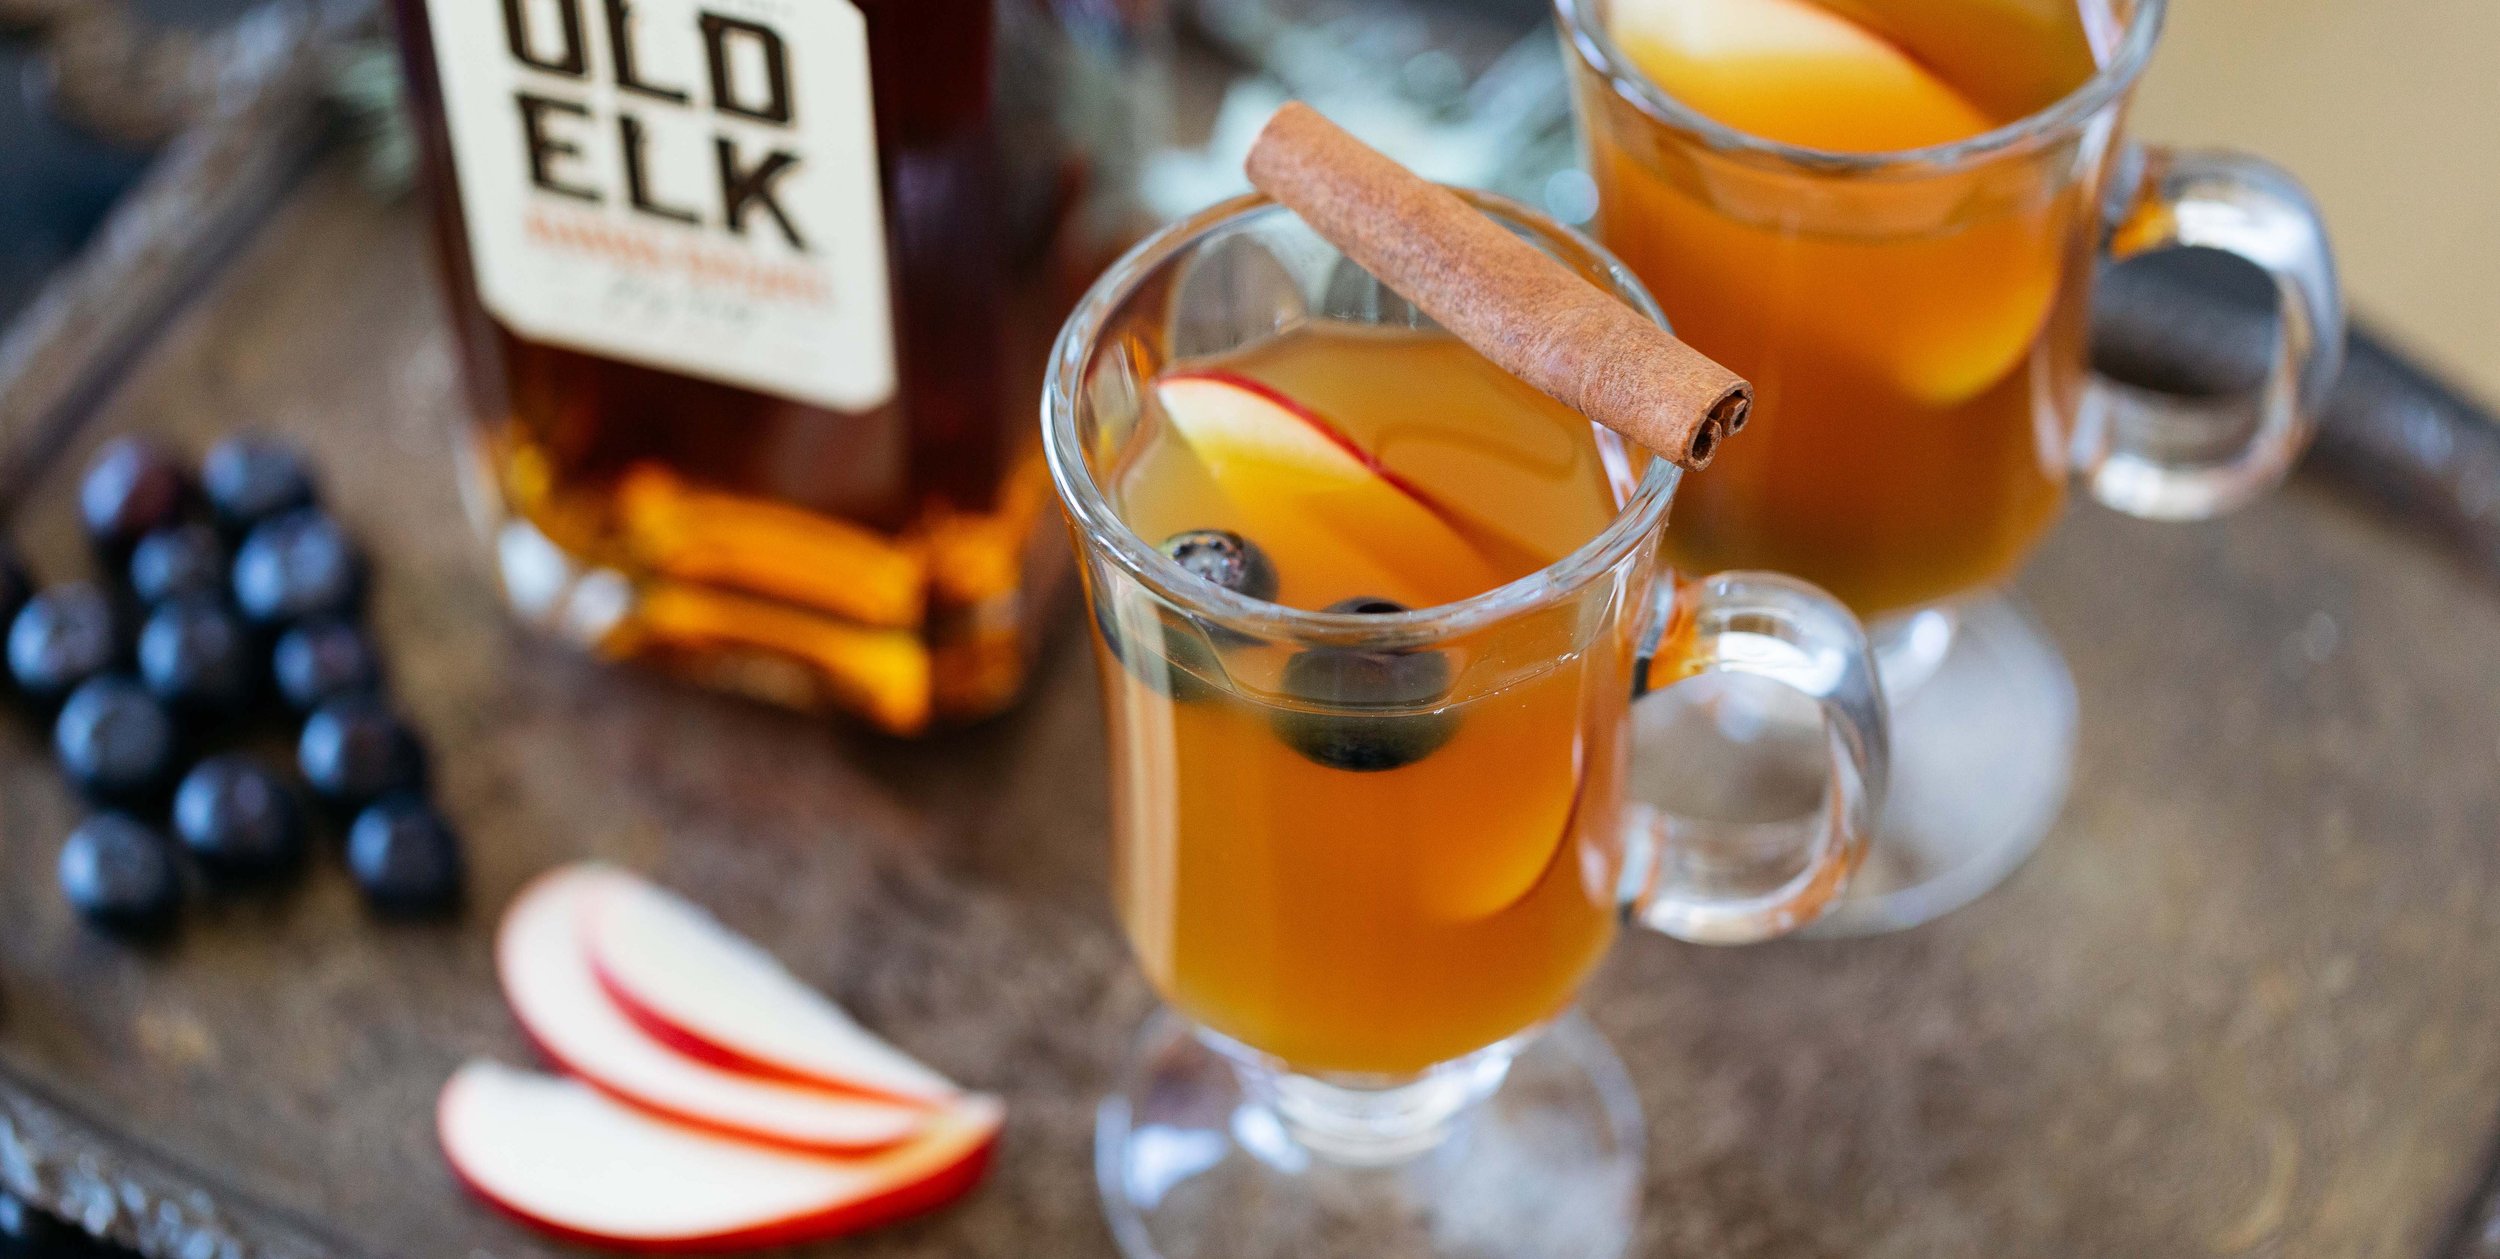 Old Elk Cocktail Recipe_Bourbon Cider.JPG